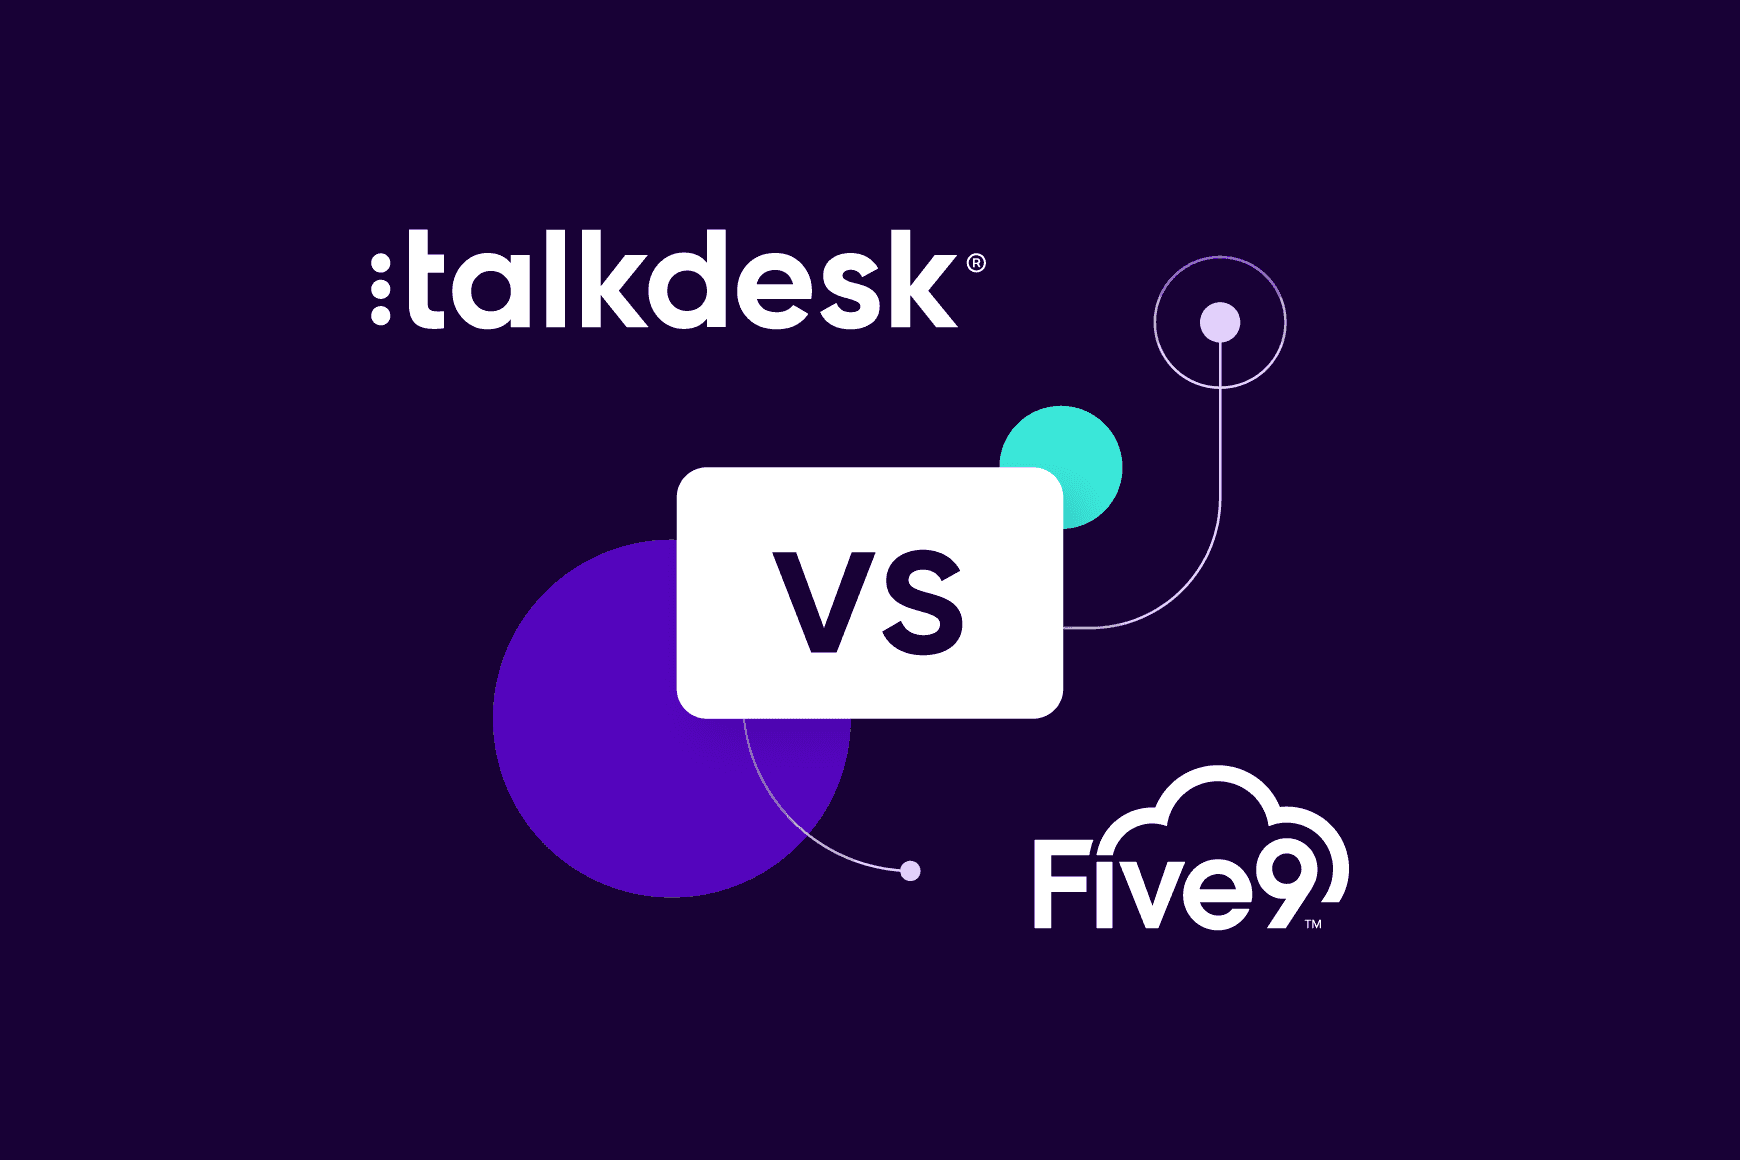 Talkdesk vs. Five9